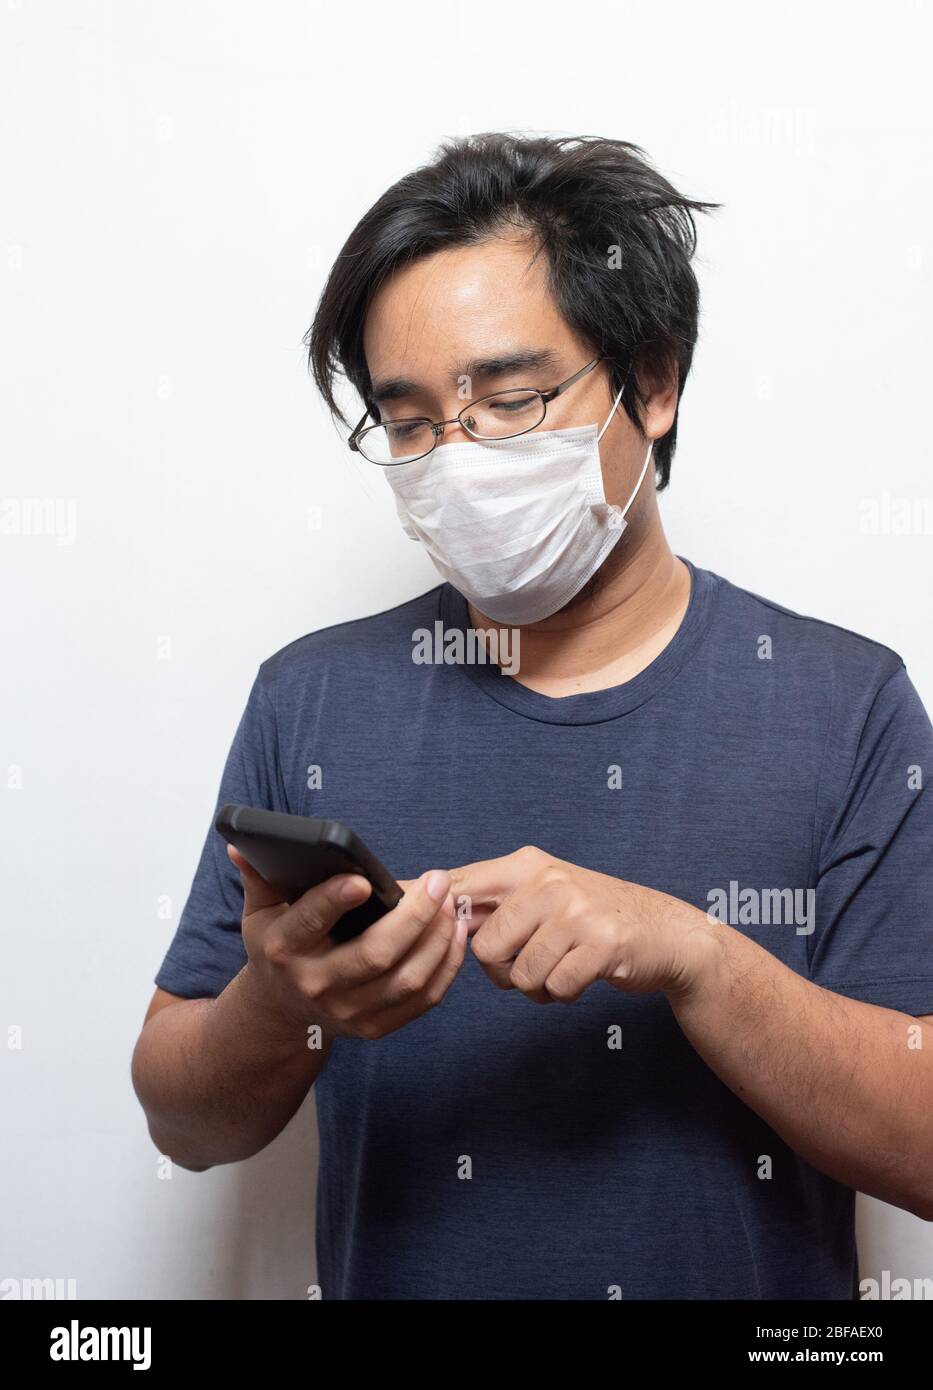 Asiatischer junger Mann in lässig tragen chirurgische medizinische Maske COVID-19 mit Smartphone auf weiß isoliert schützen Health Care Konzept.Wuhan coron Stockfoto